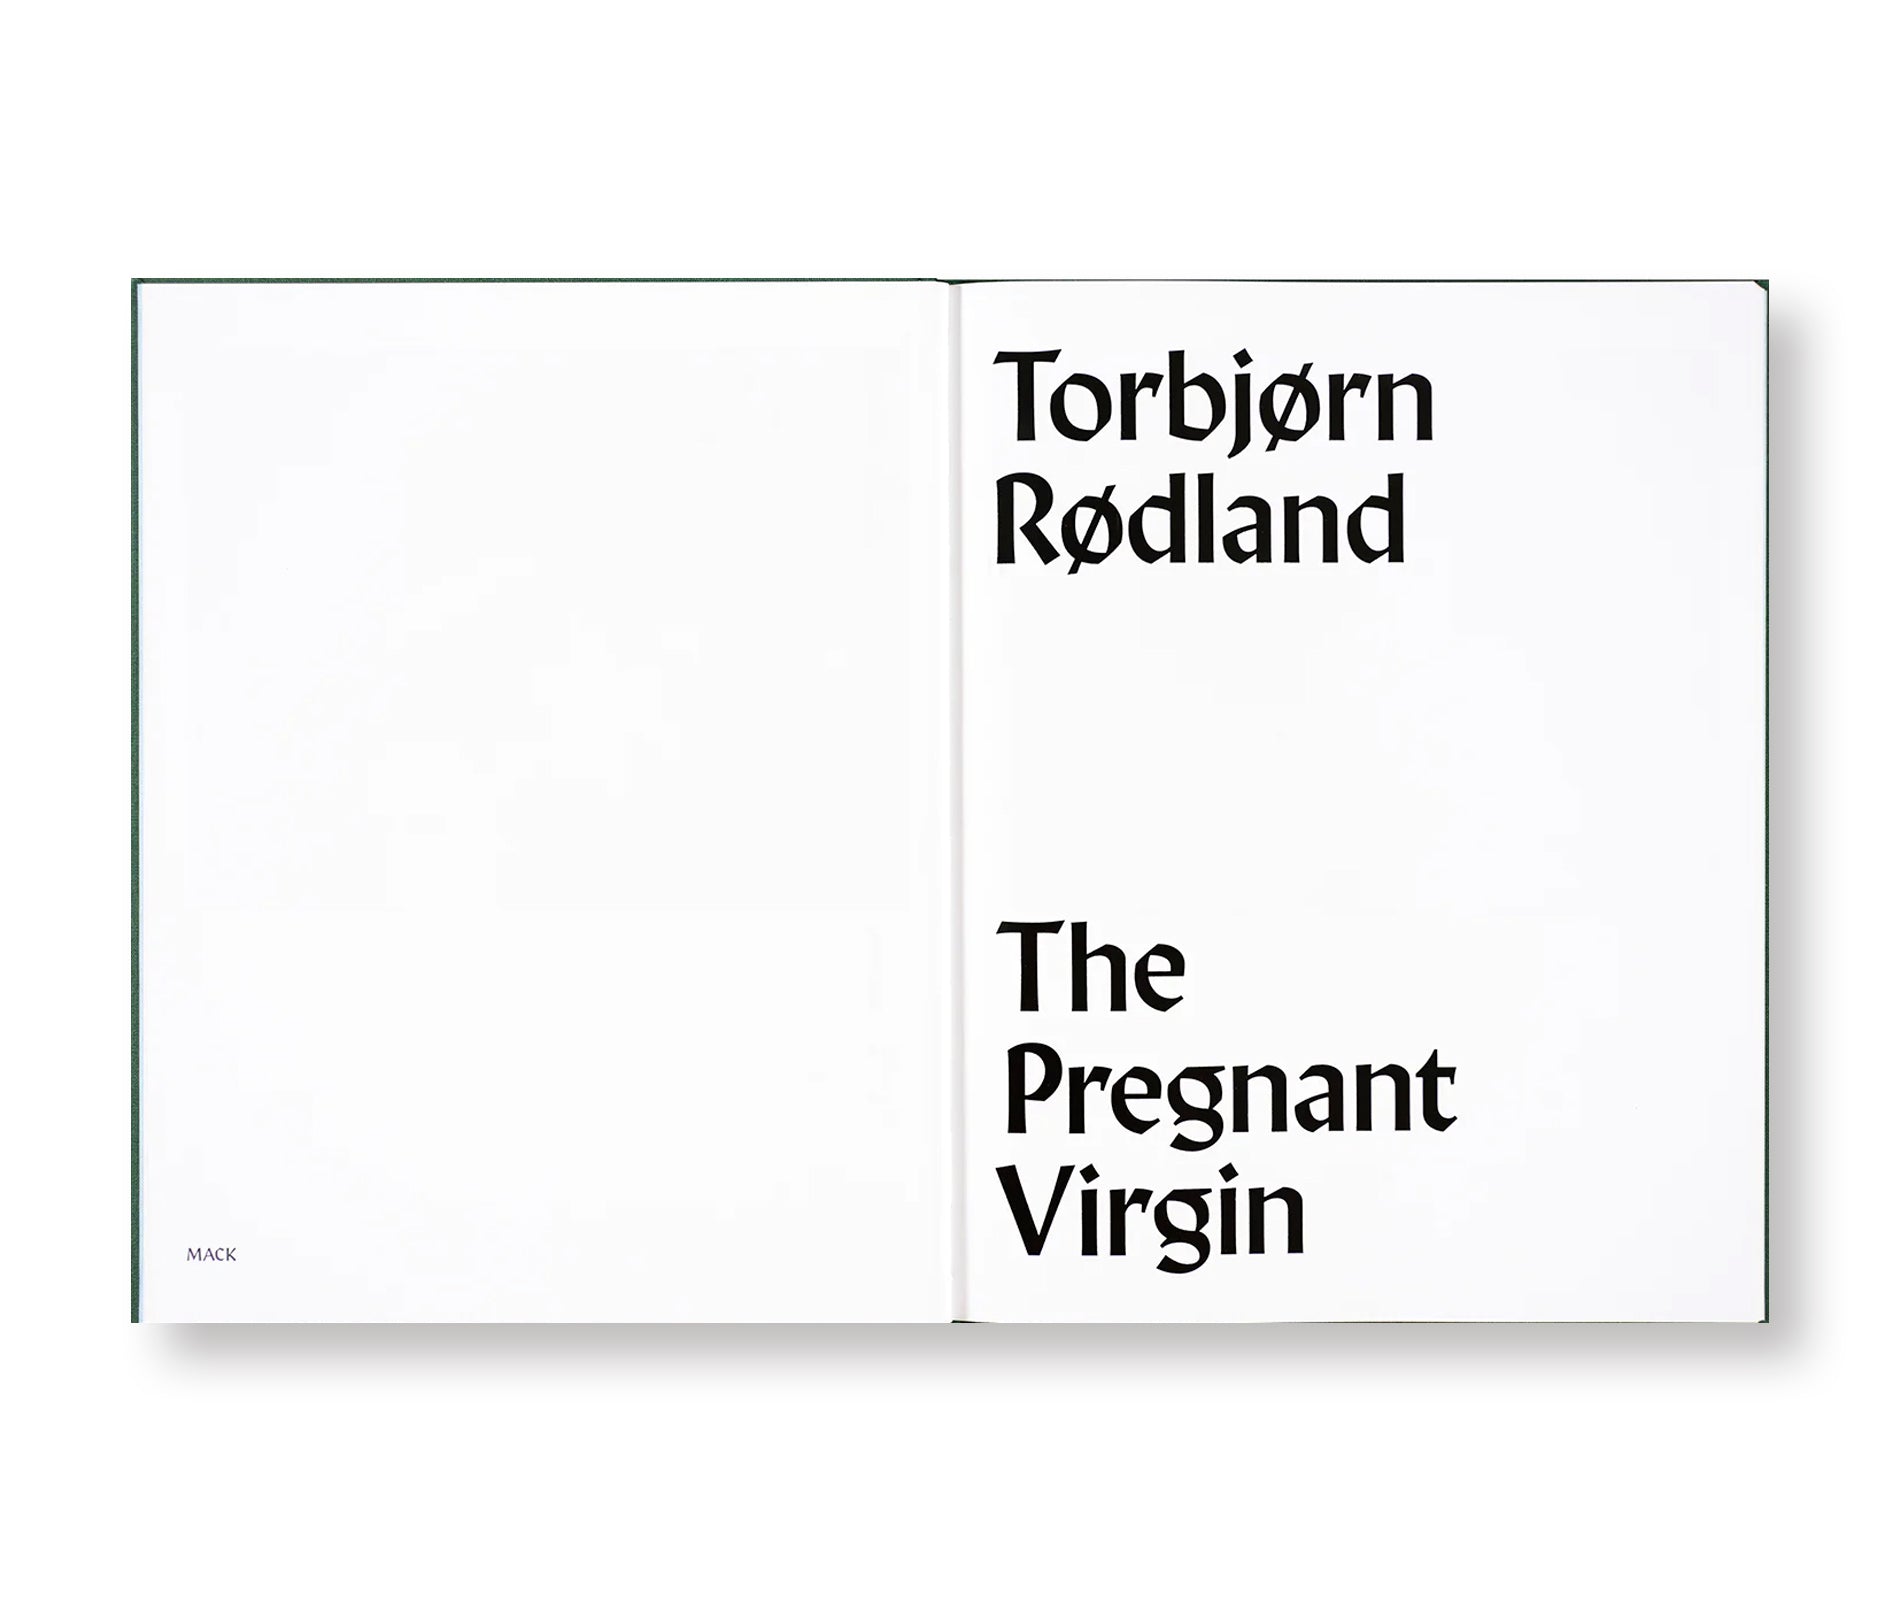 THE PREGNANT VIRGIN by Torbjørn Rødland